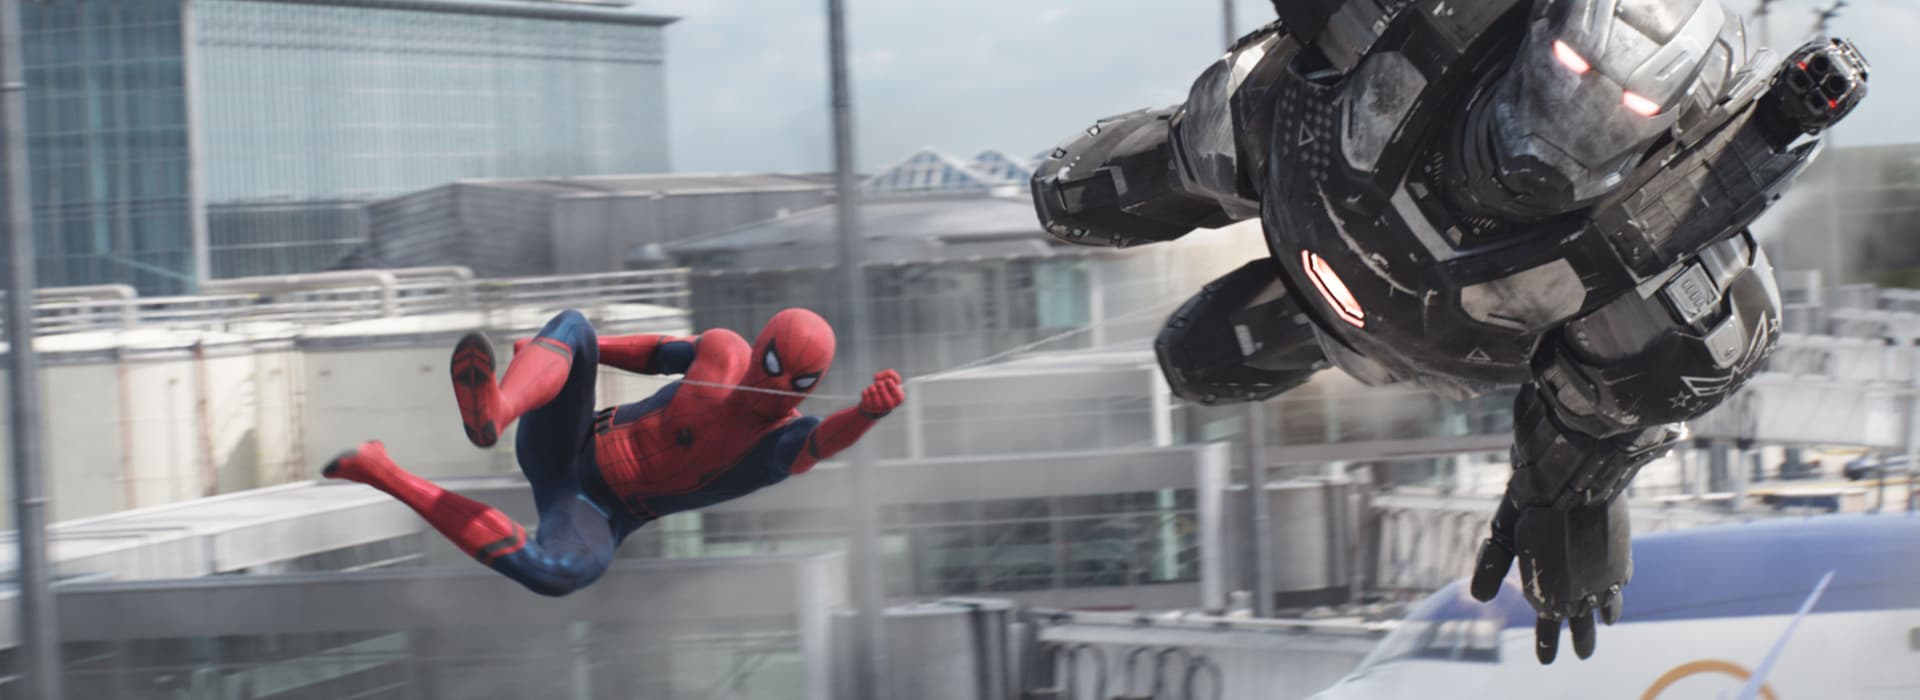 Spider-Man and War Machine